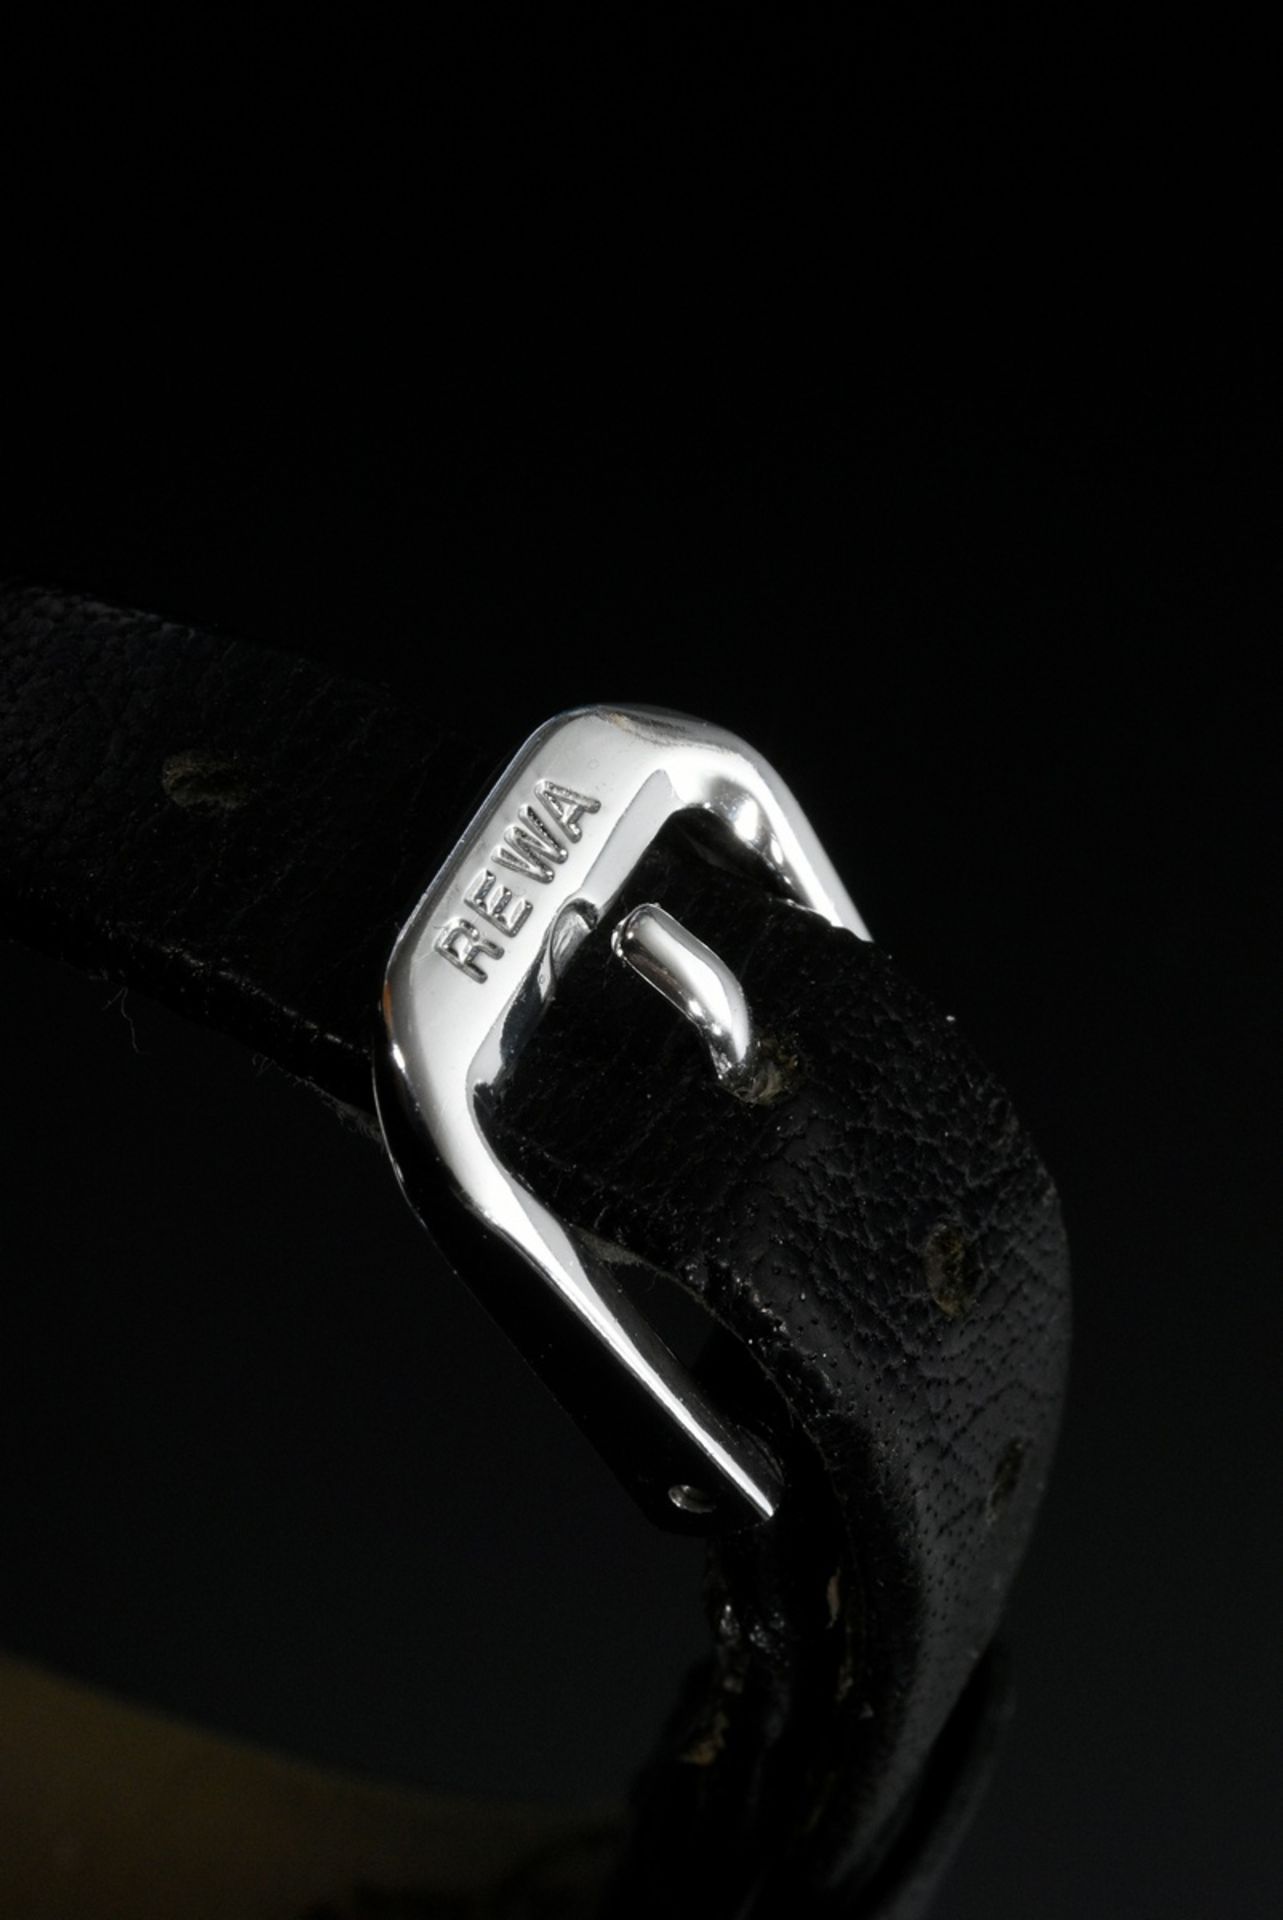 Weißgold 750 Armbanduhr "Baume & Mercier", Handaufzug, rundes Gehäuse, Boden aufgedrückt, schwarzes - Bild 3 aus 4